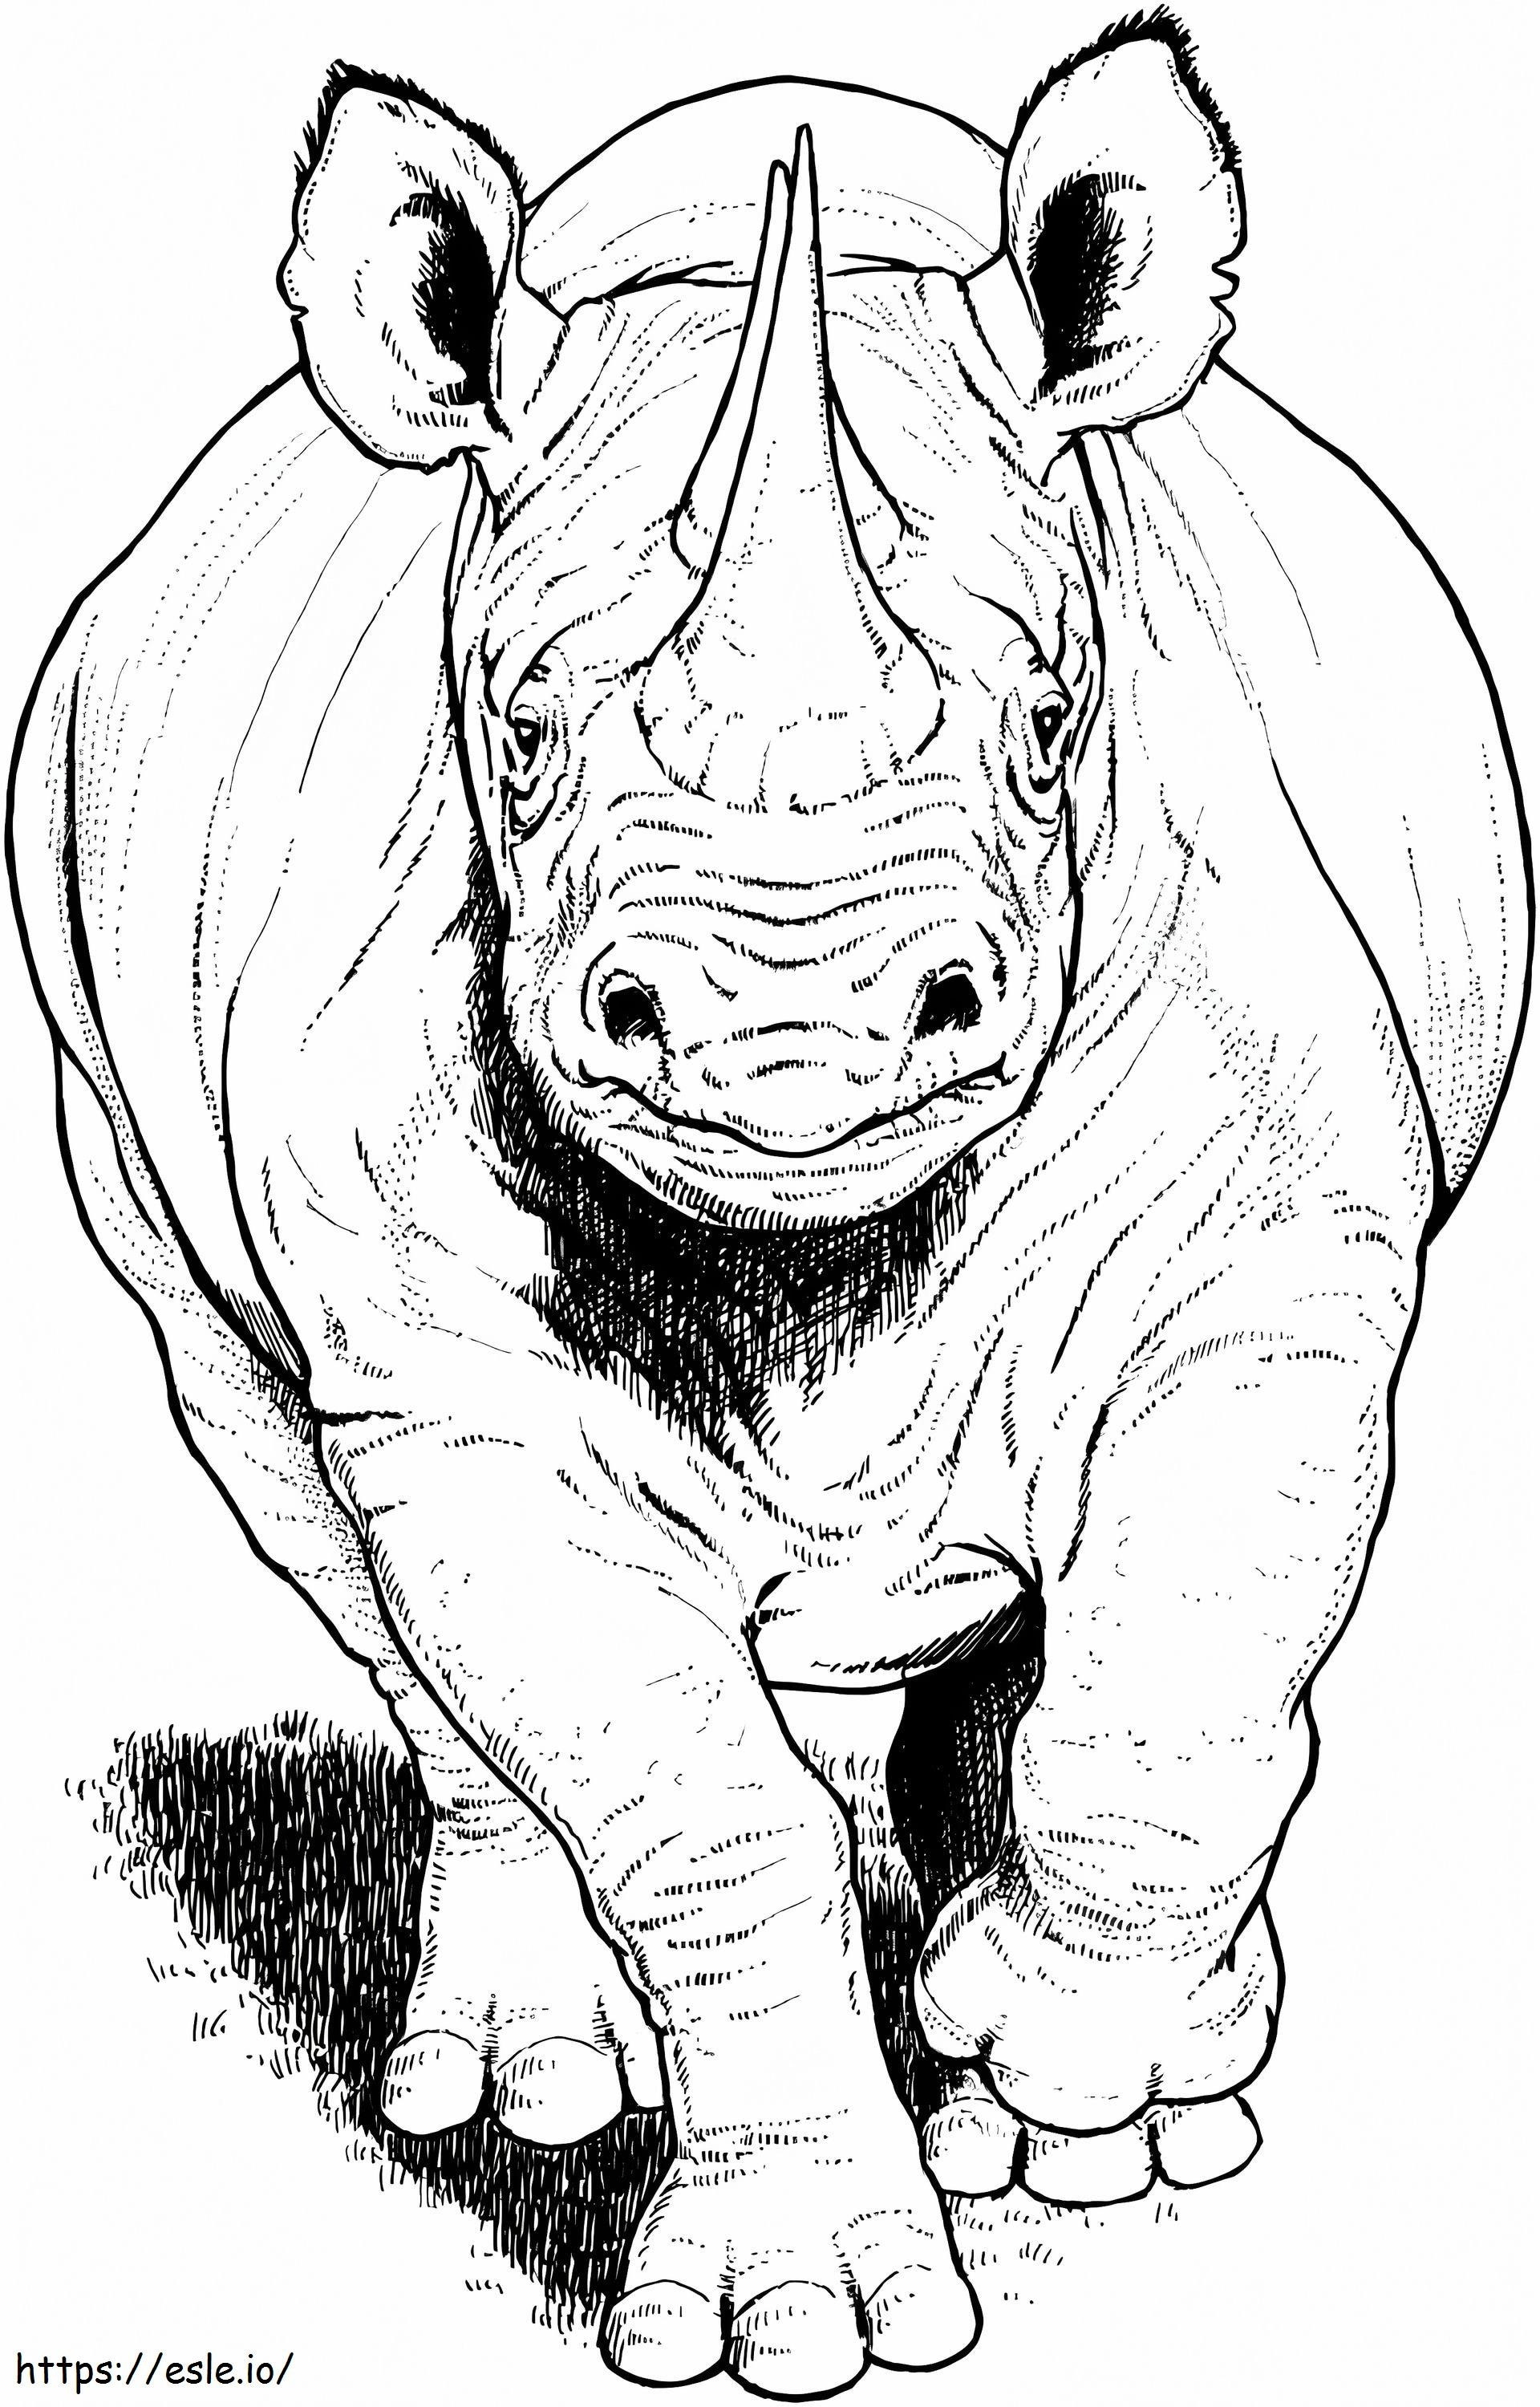 Rinoceronte nero in esecuzione da colorare